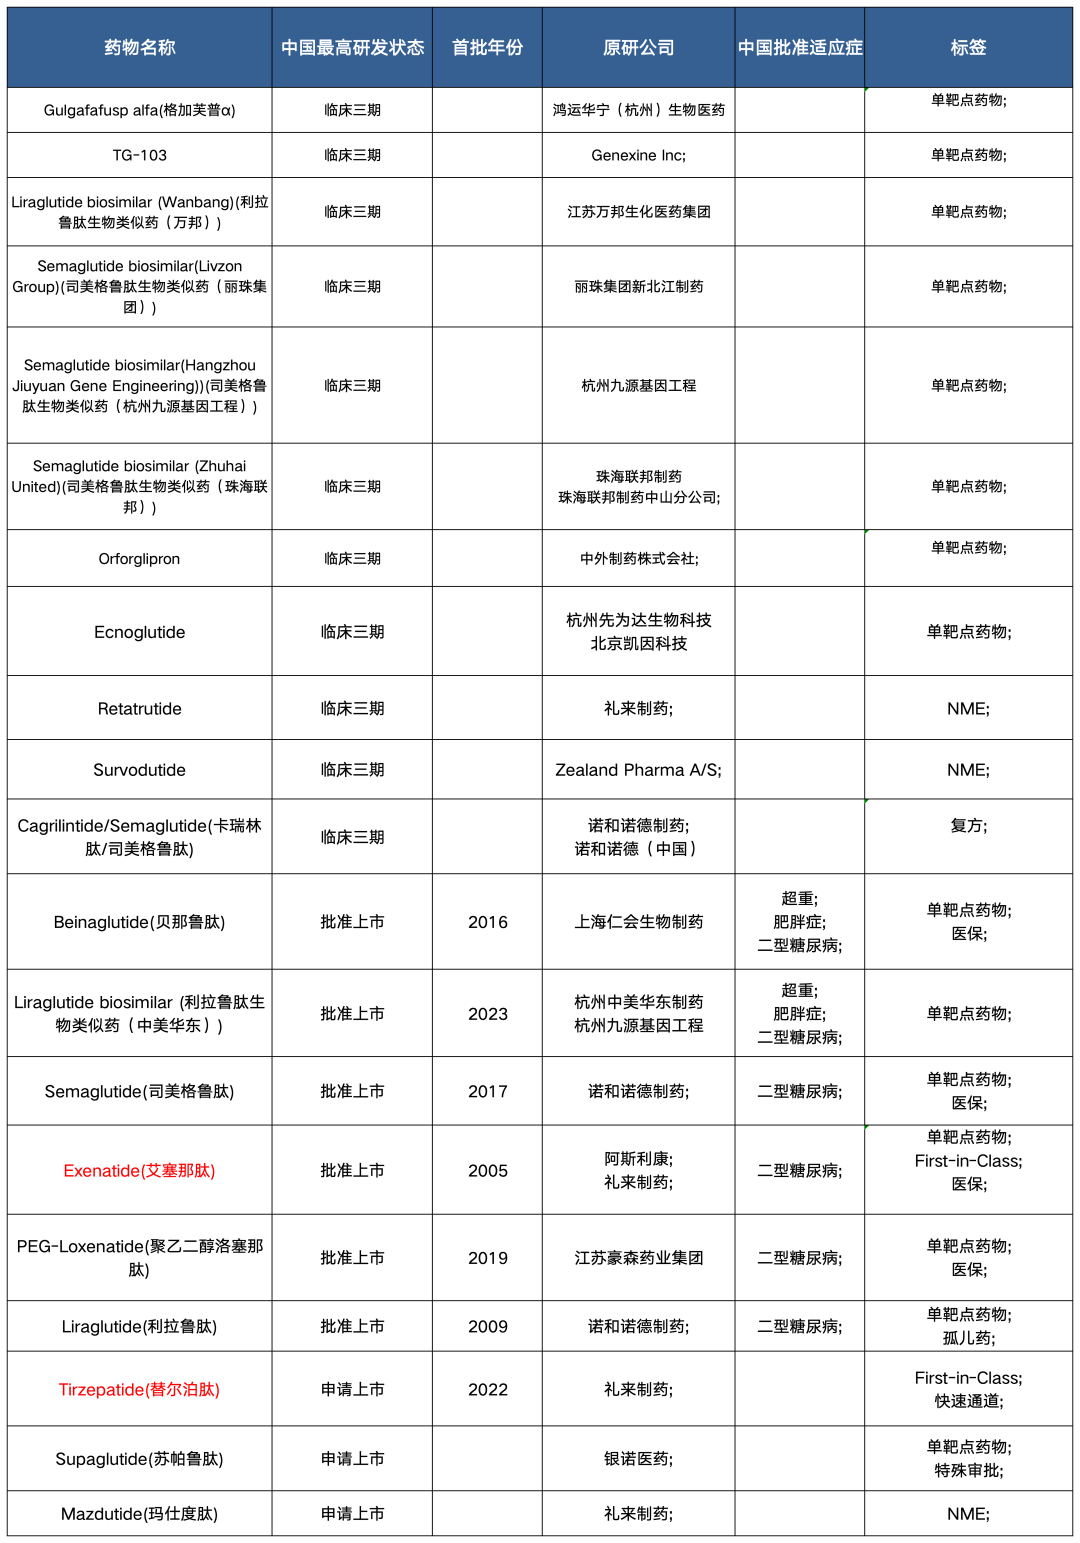 中国GLP-1竞争图（减重适应症）